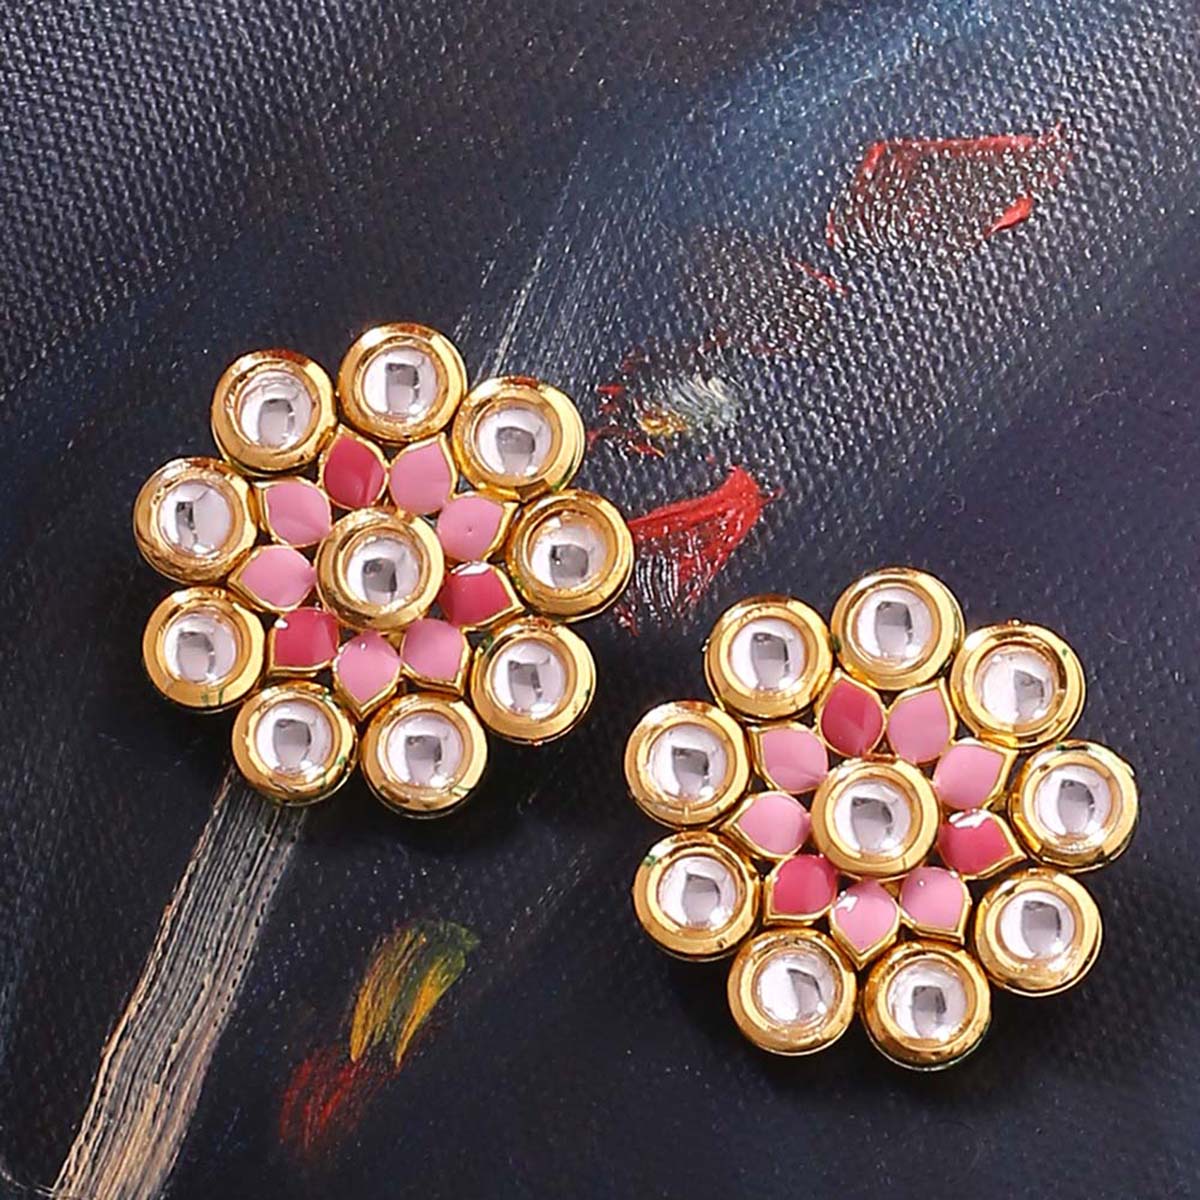 Manmayi Floral Stud Earrings